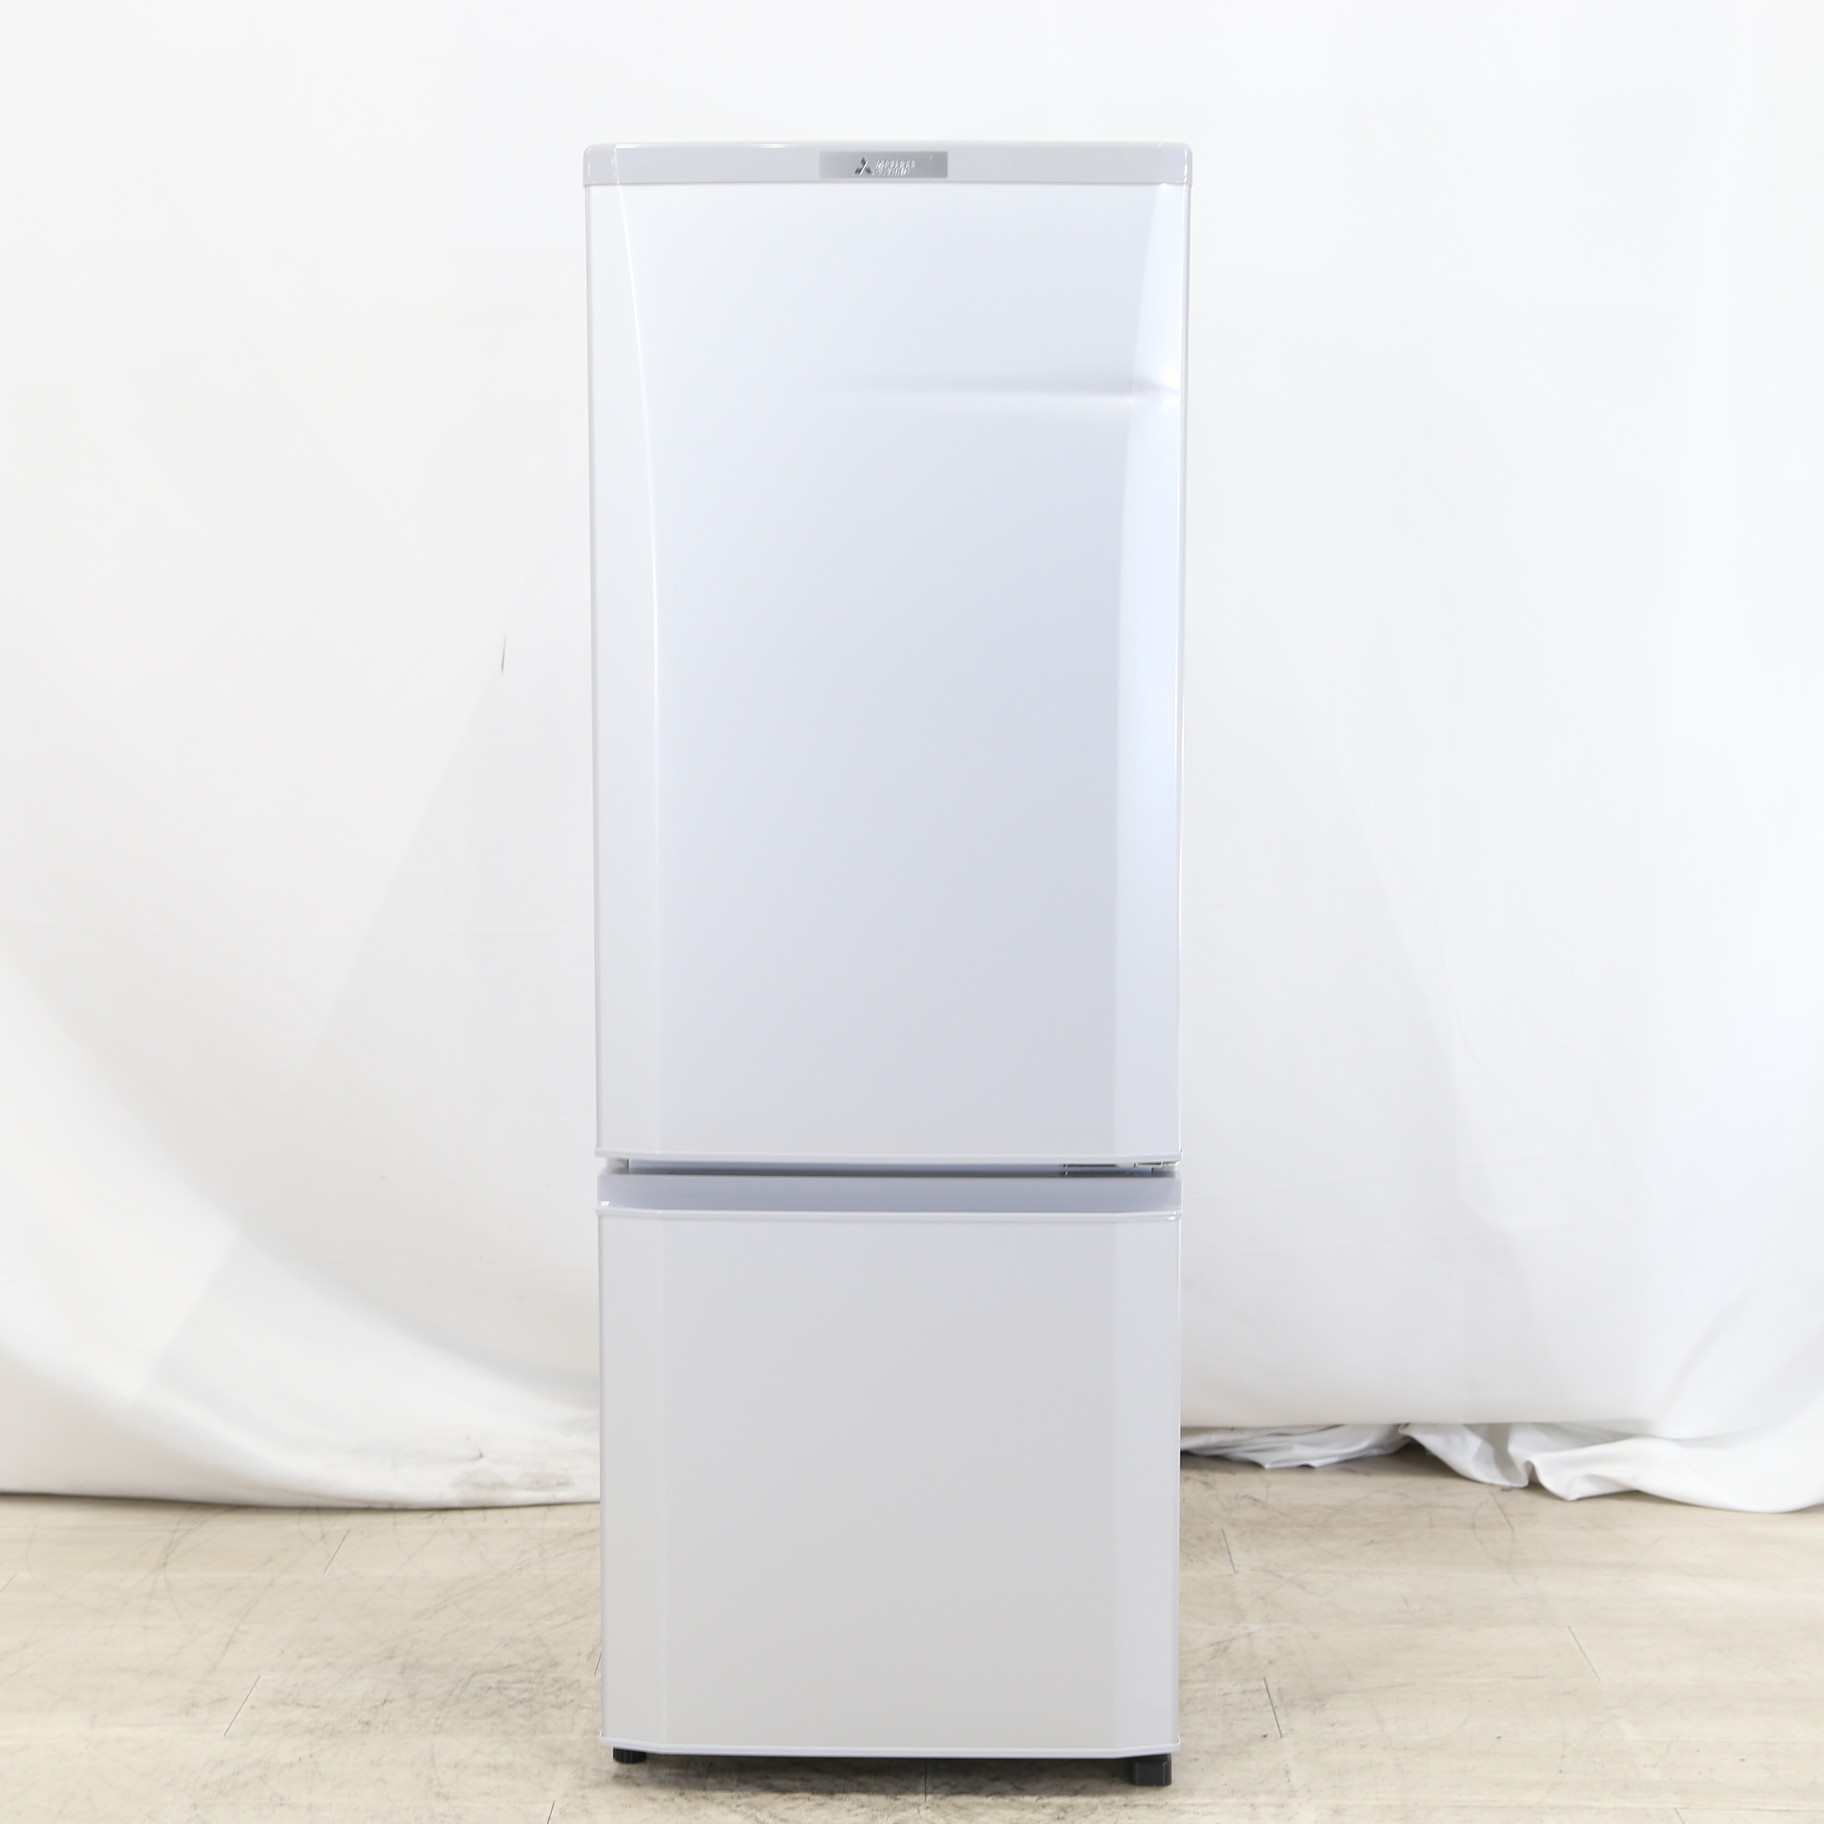 2019年製 168L MITSUBISHI 冷蔵庫 MR-P17ED - 冷蔵庫・冷凍庫